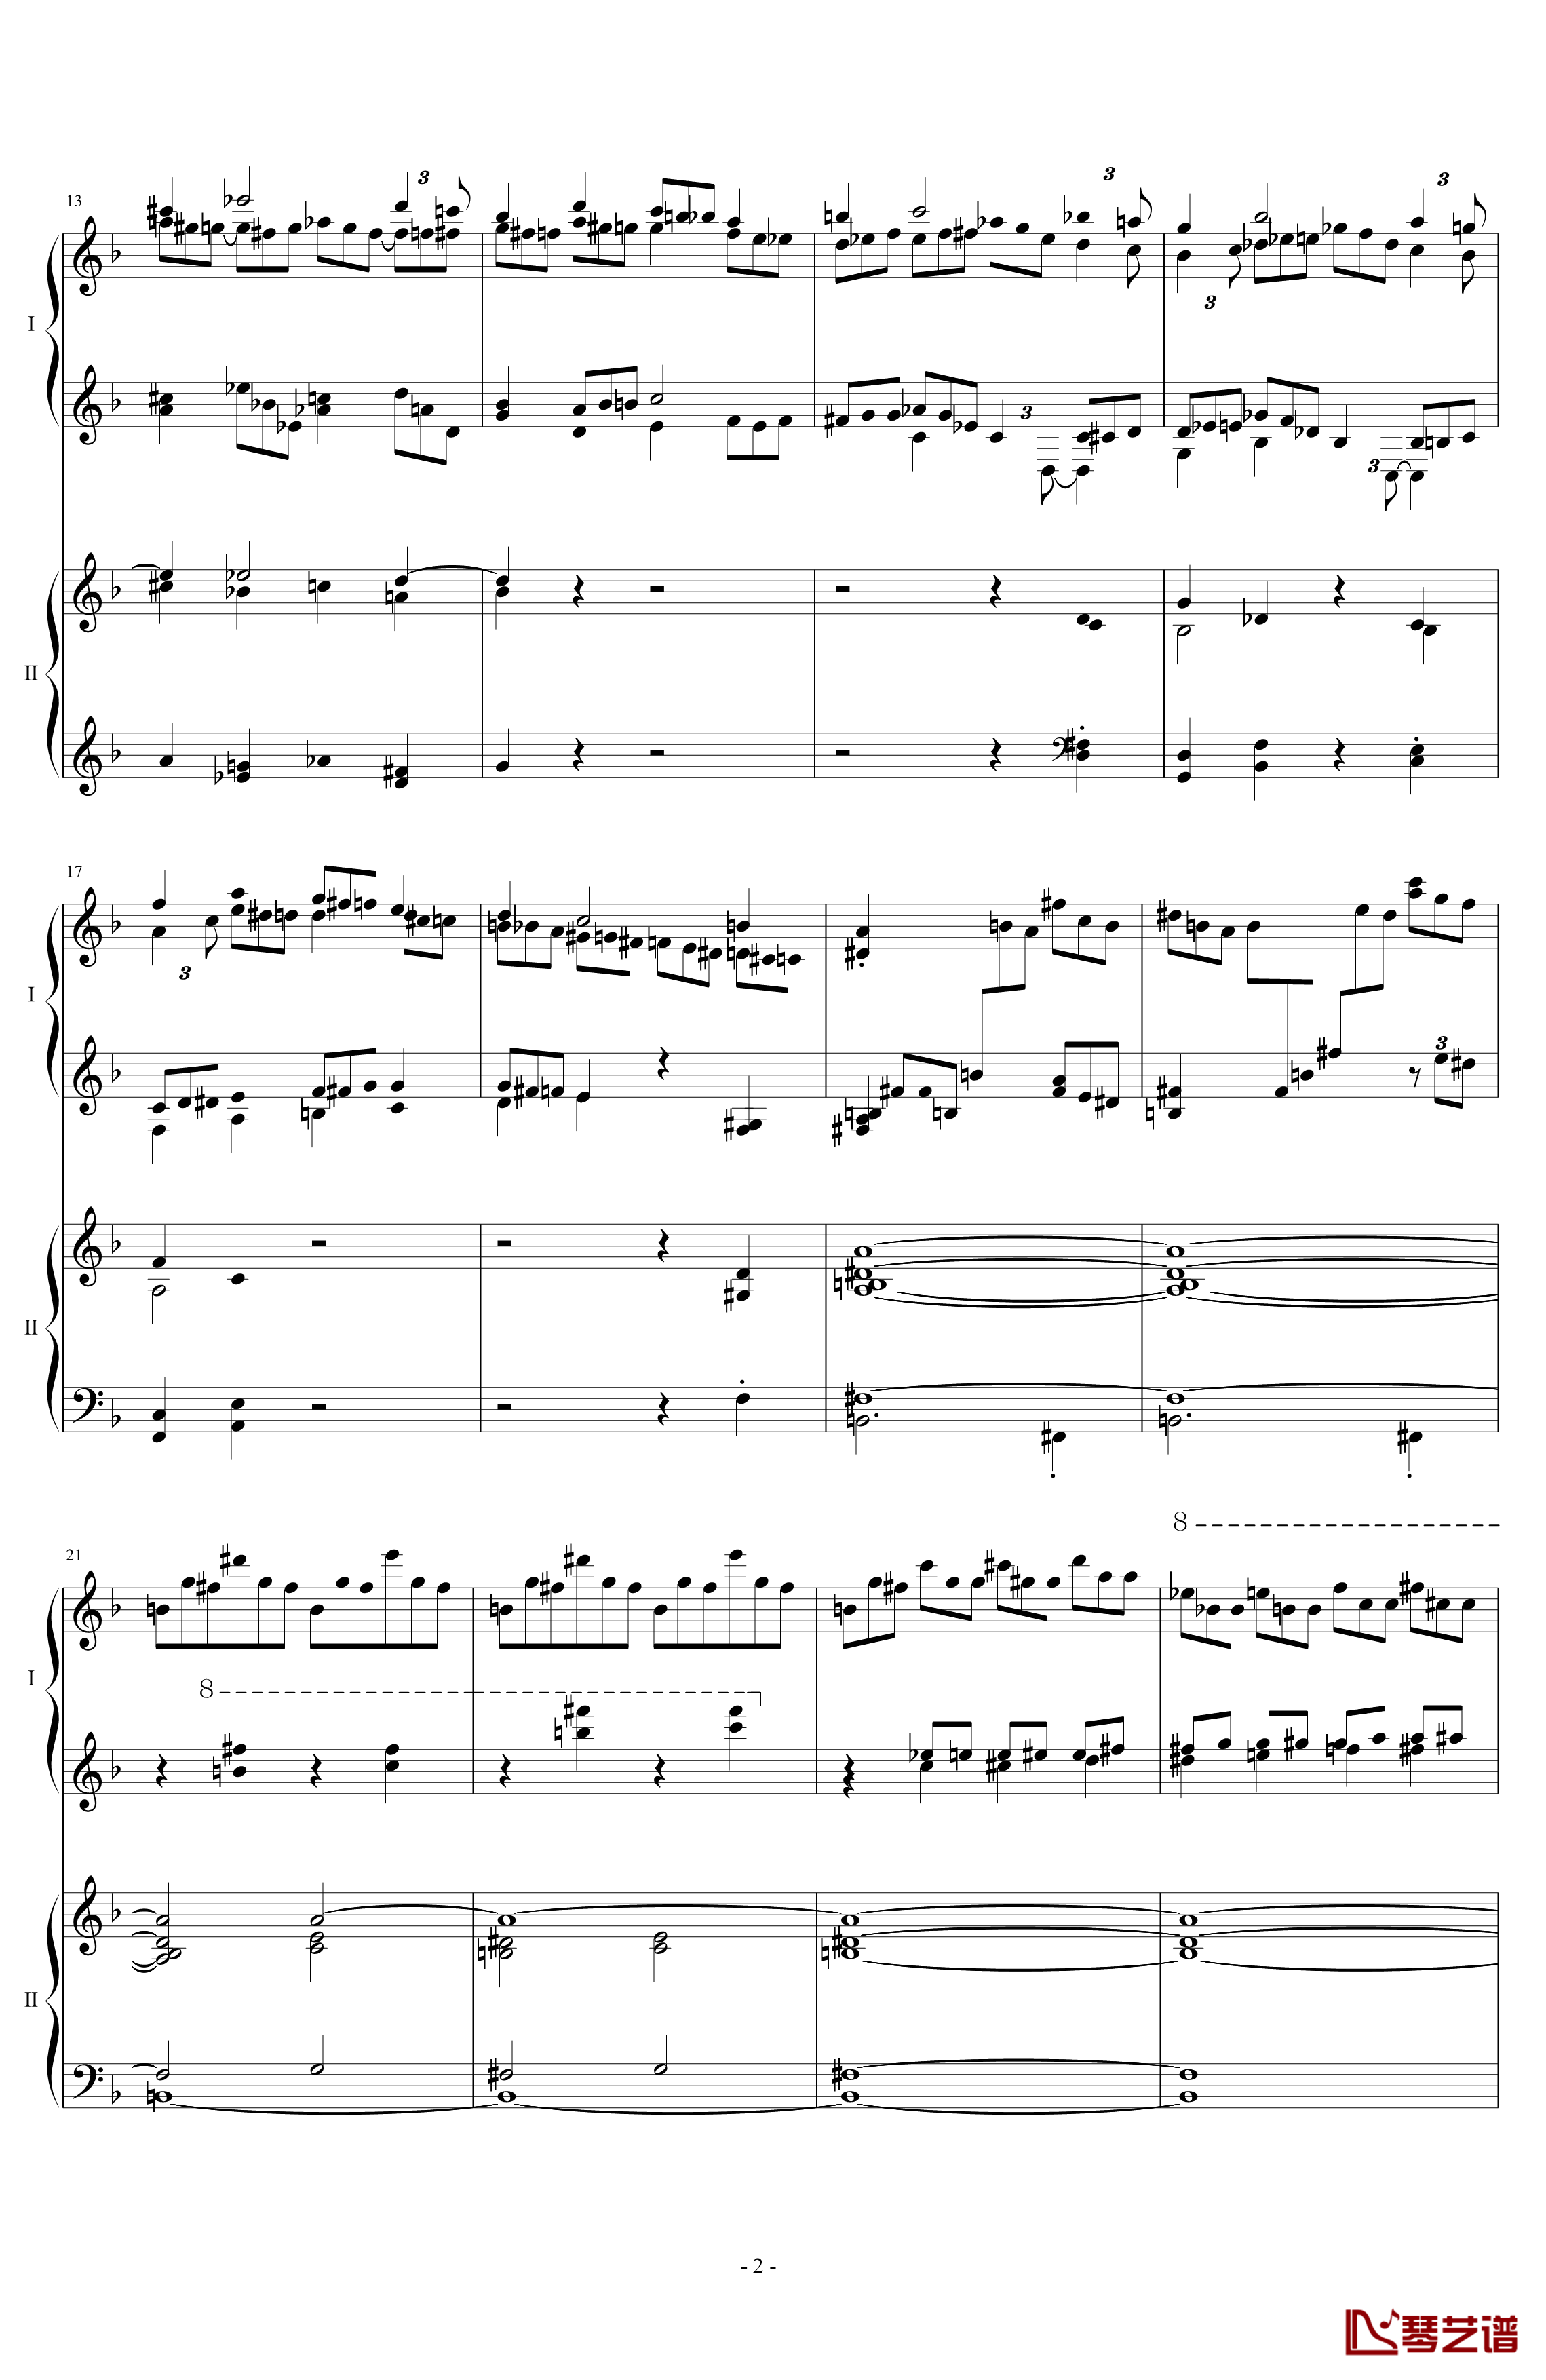 拉三第三乐章41页双钢琴钢琴谱-最难钢琴曲-拉赫马尼若夫2